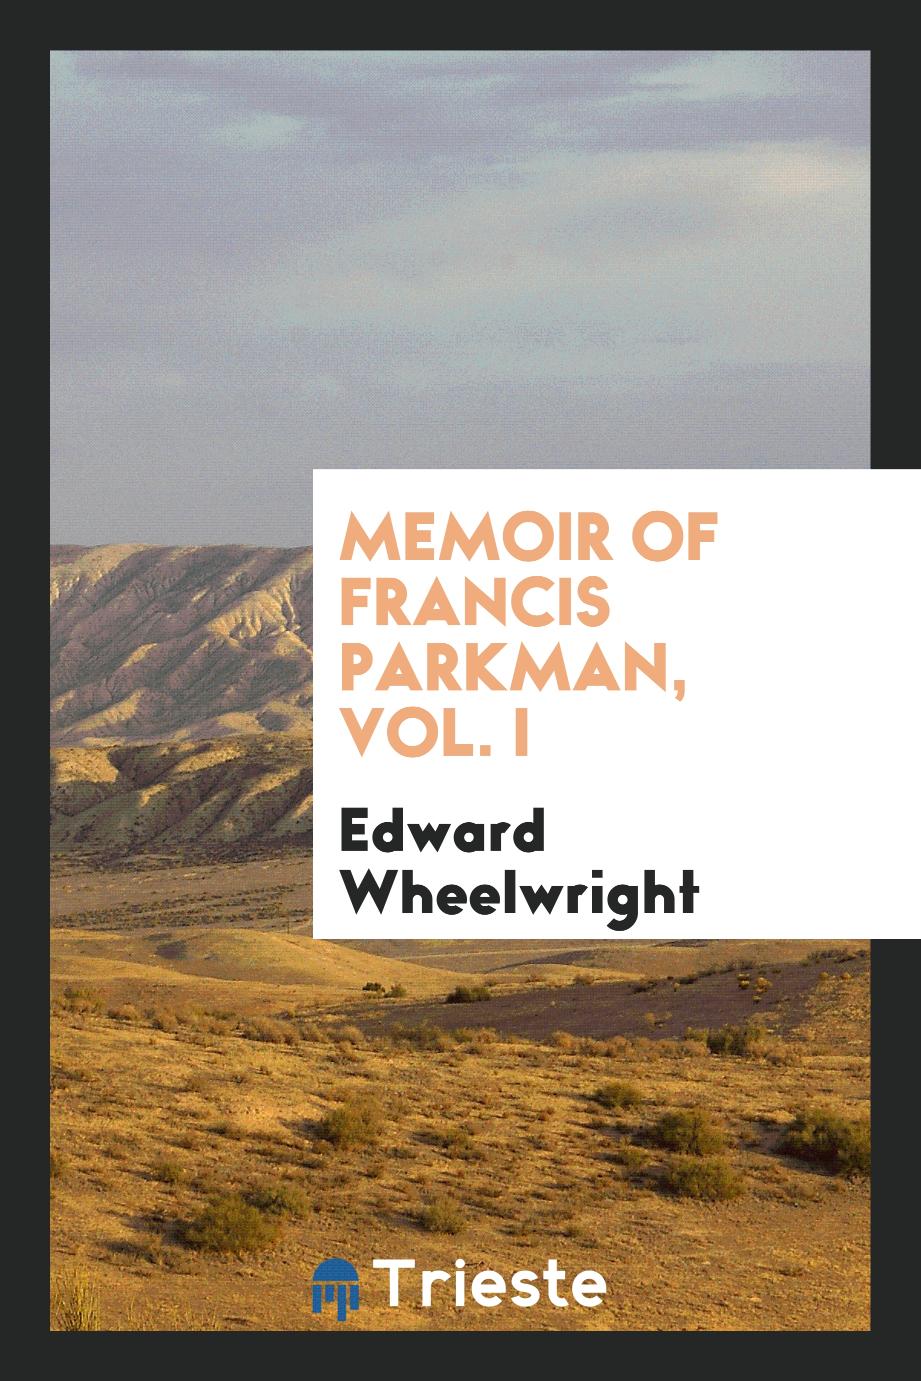 Memoir of Francis Parkman, Vol. I